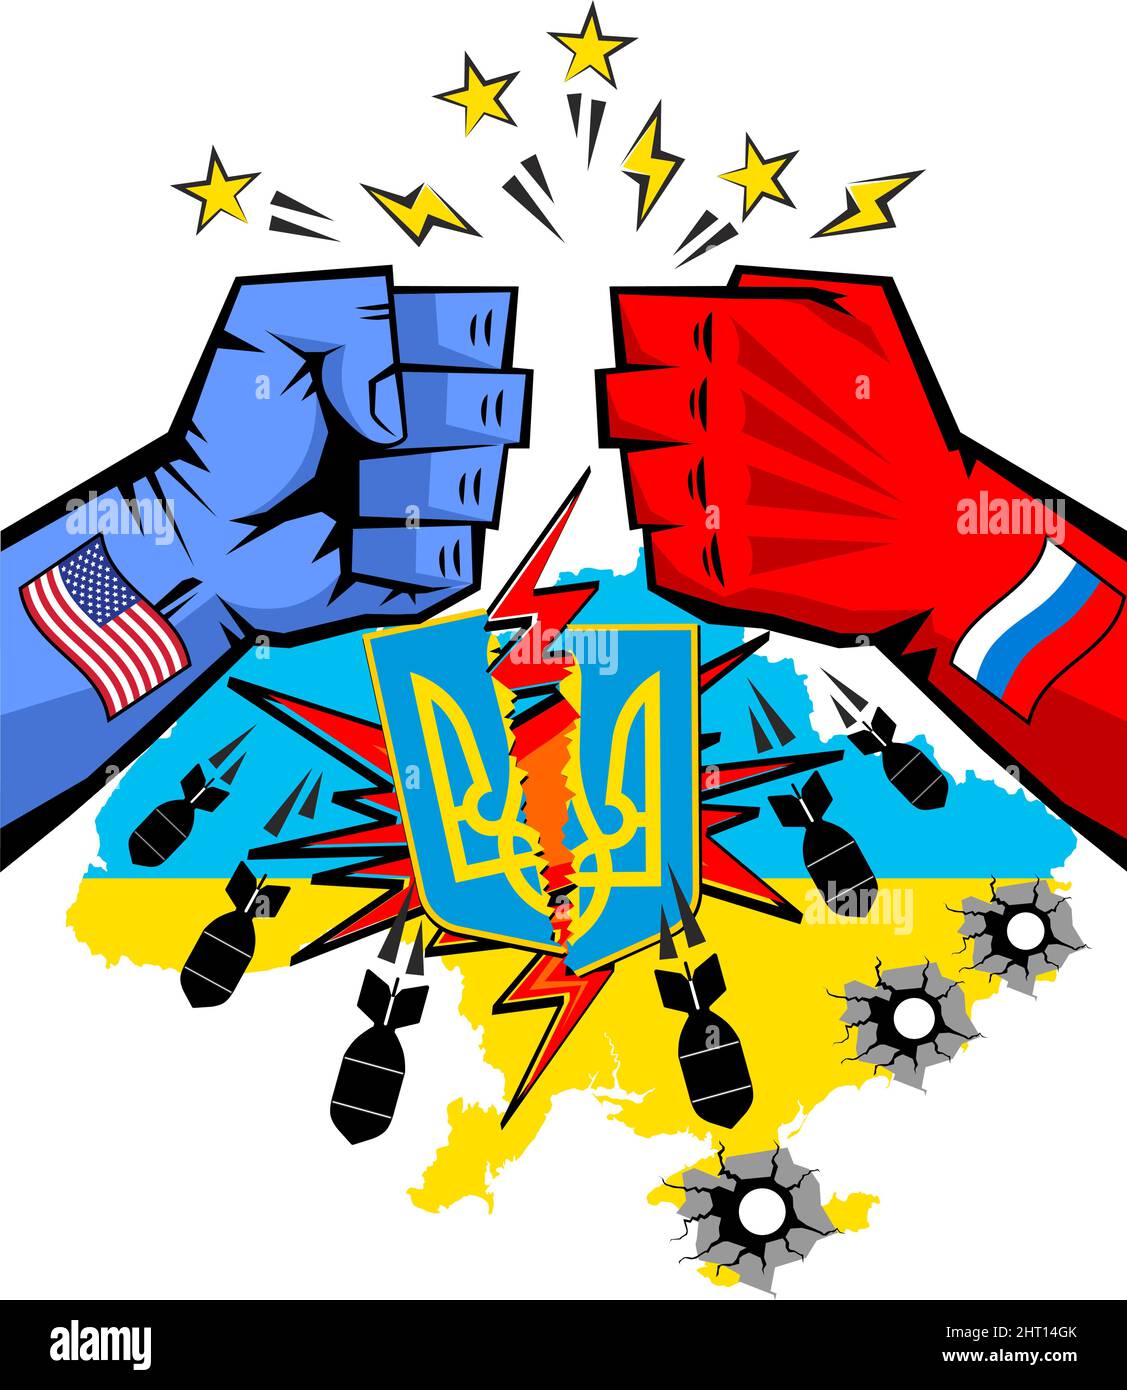 Poster Battaglia di giganti per l'Ucraina. Lo scontro tra potenti pugni degli Stati Uniti e della Russia, uno stemma rotto e buchi di proiettili sulla mappa dell'Ucraina; Illustrazione Vettoriale